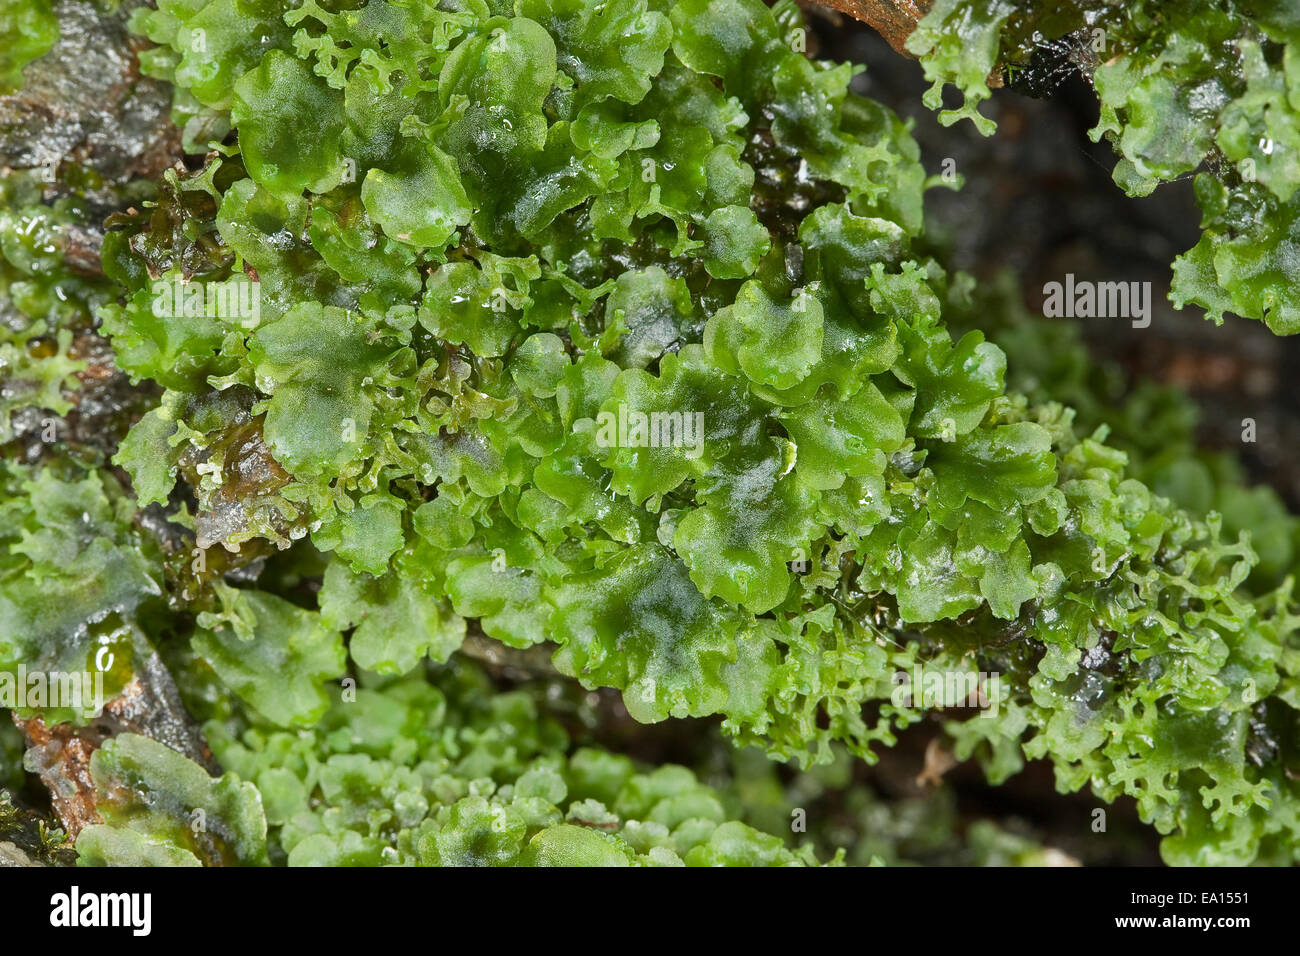 Liverwort, Endivienartiges Beckenmoos, Kelch-Beckenmoos, Pelliamoos, Lebermoos, Pellia endiviifolia Stock Photo